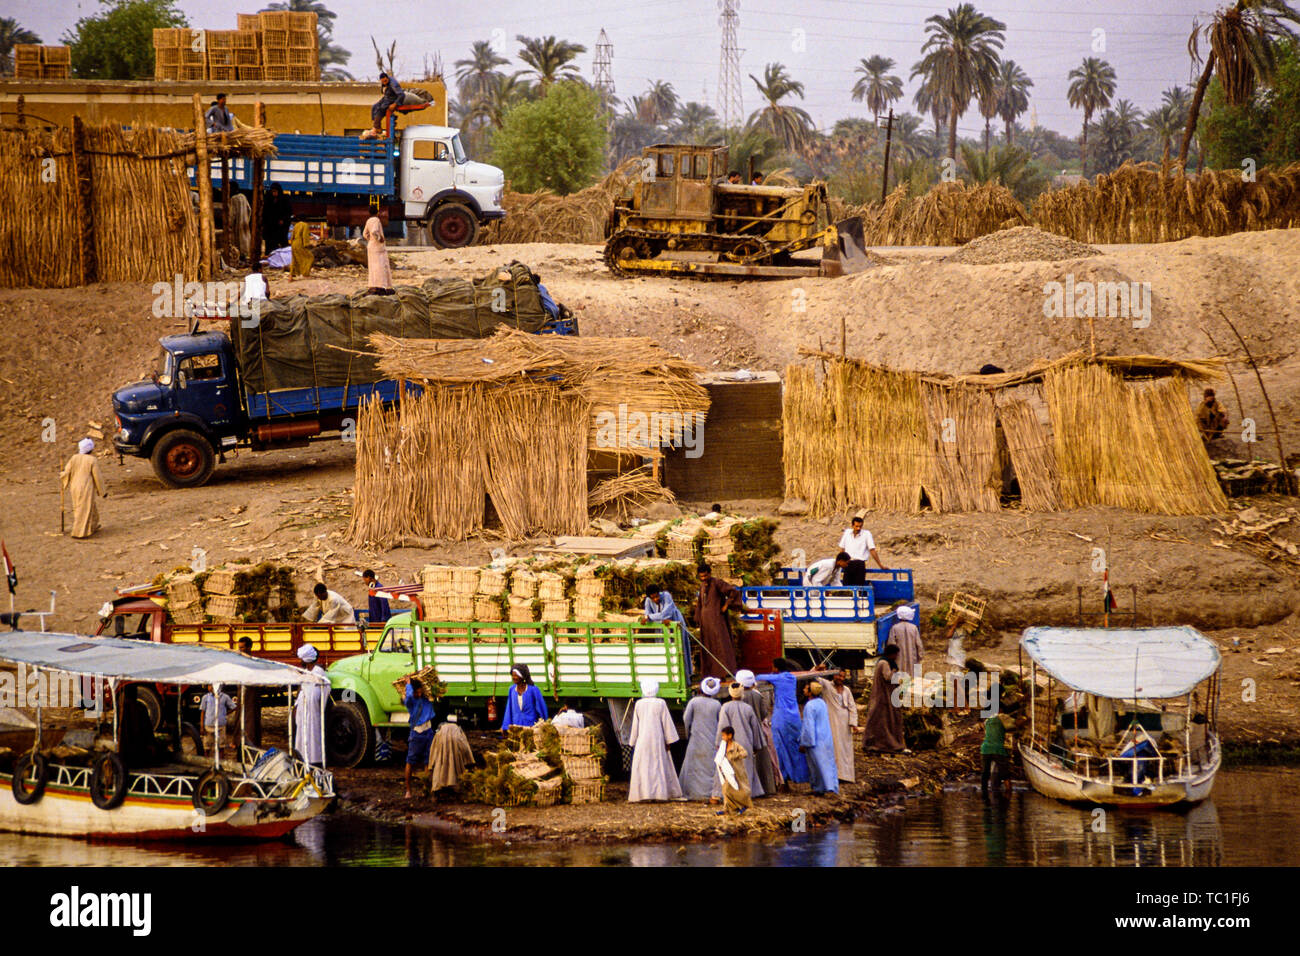 Luxor, Ägypten. Abnäher und Schiffe be- und entladen von Schilf und Futter an den Ufern des Nils. Foto: © Simon Grosset. Archiv: Bild digitalisiert von einem Stockfoto